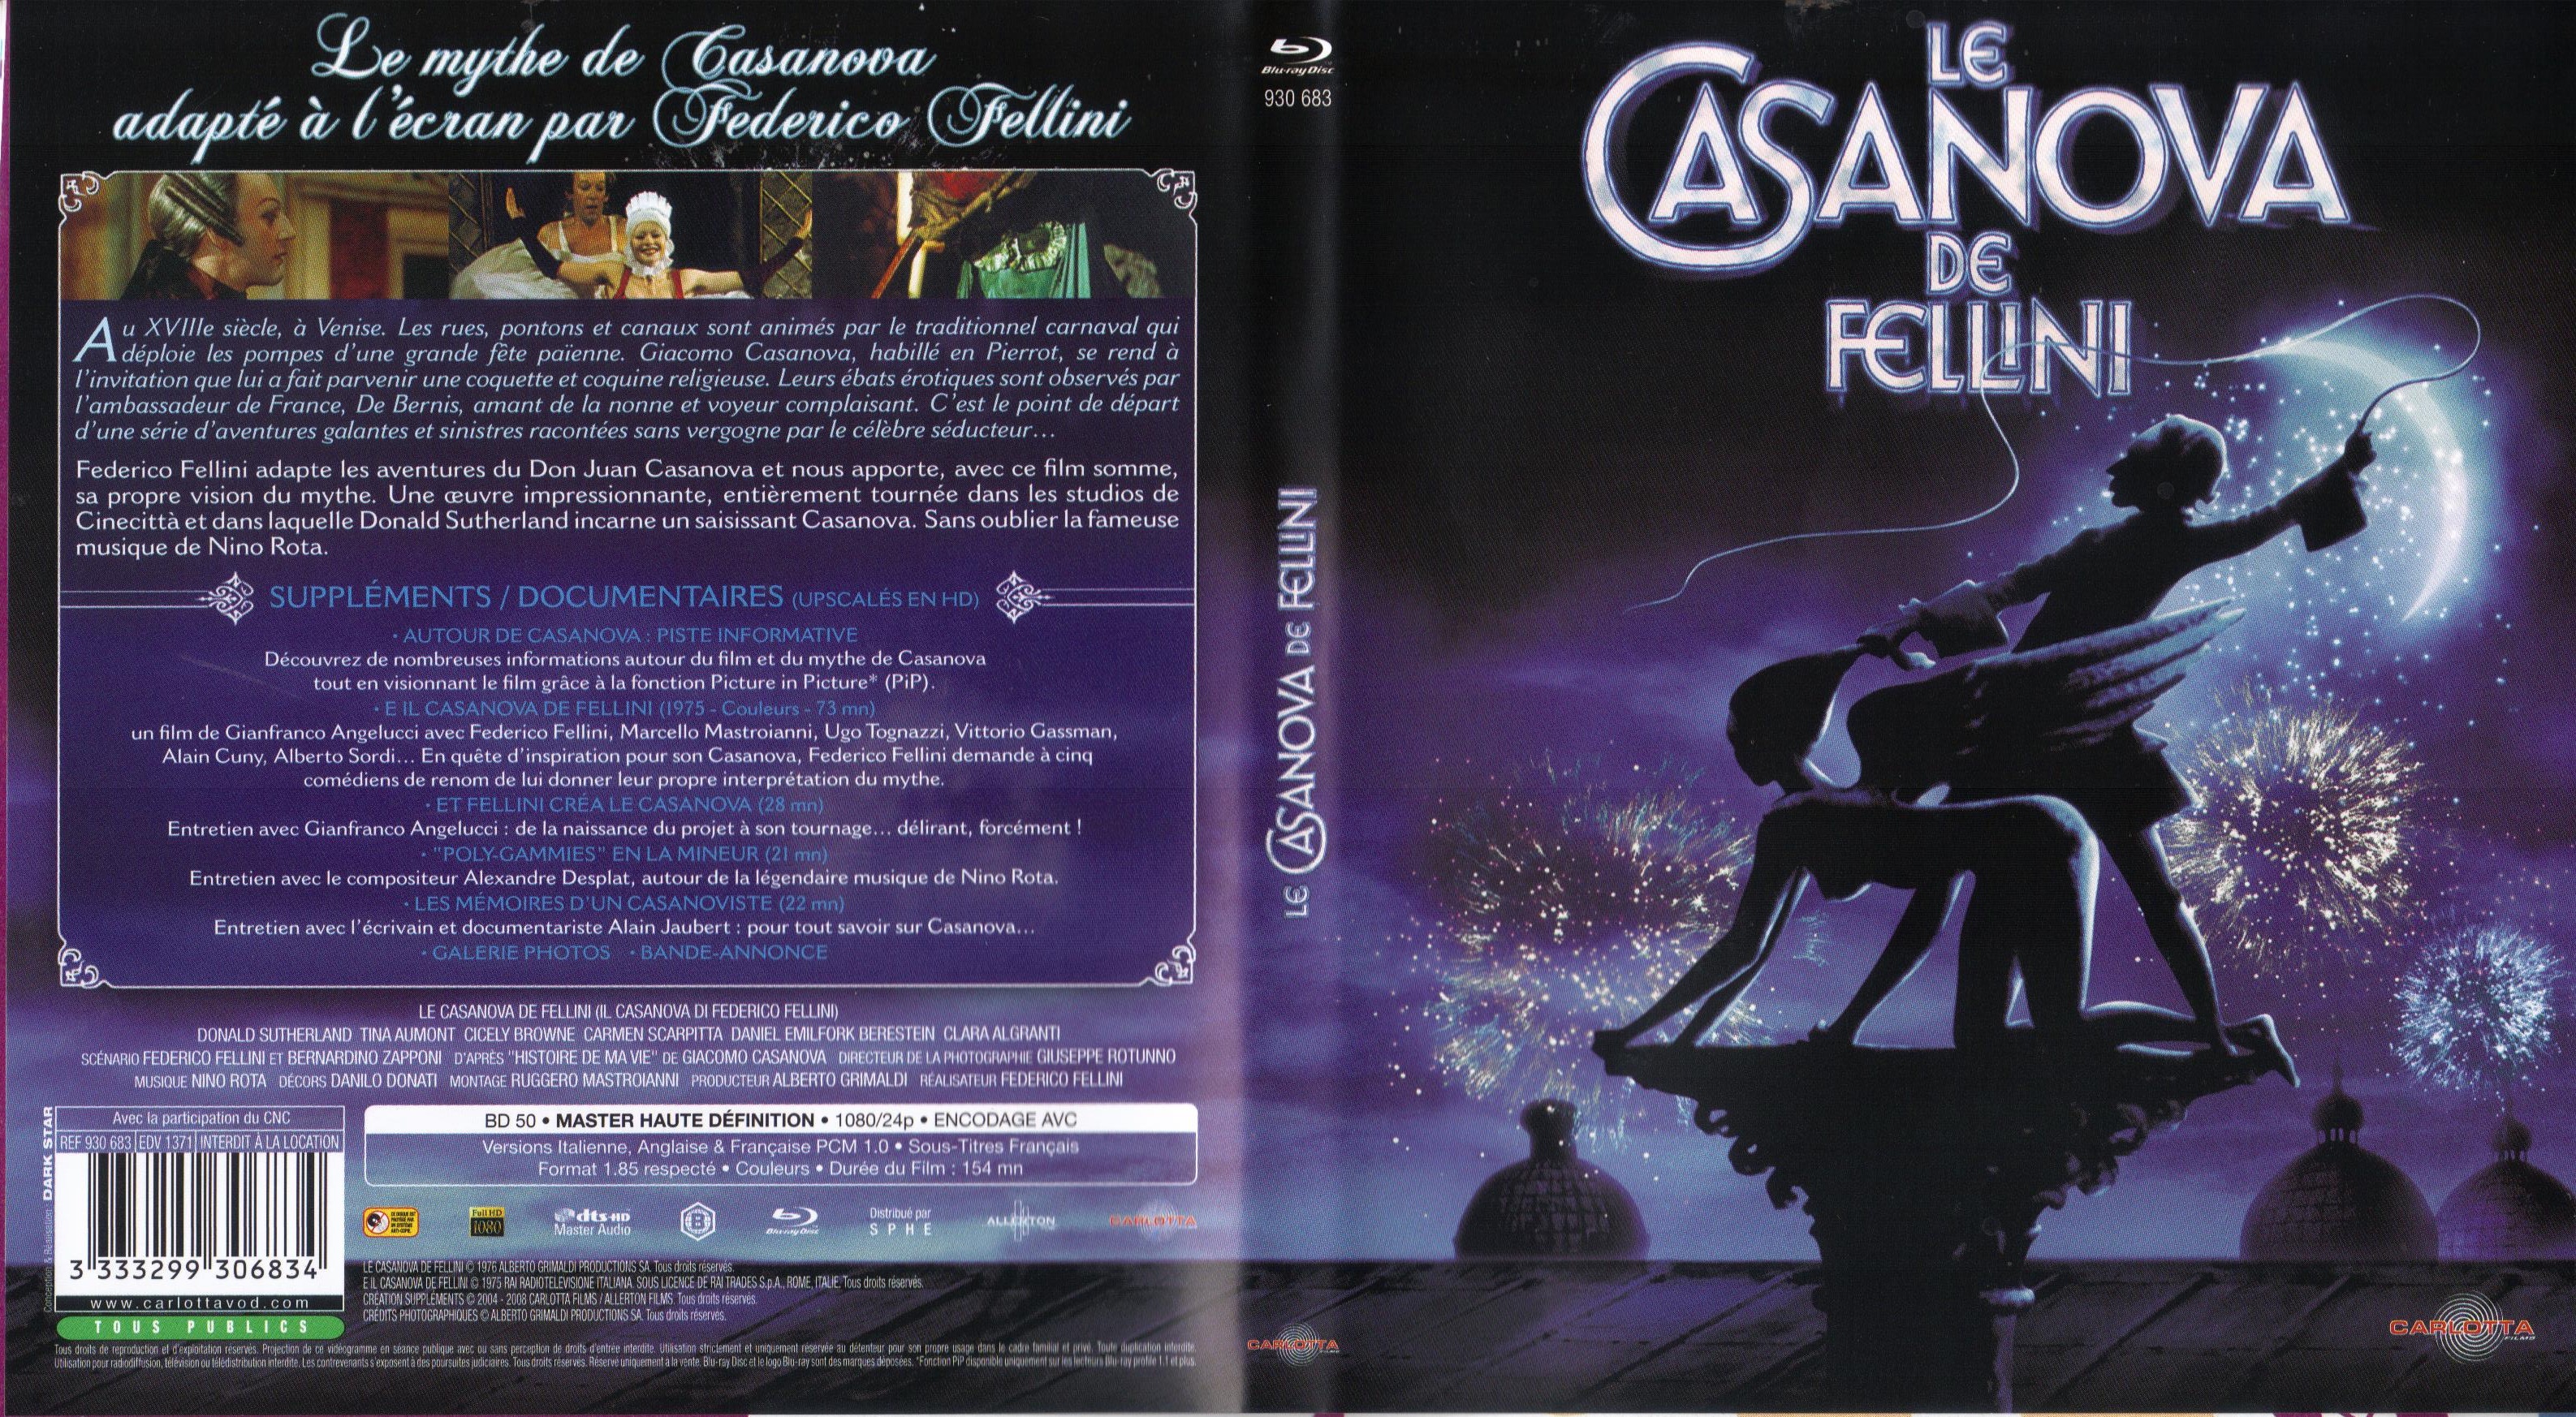 Jaquette DVD Le Casanova de Fellini (BLU-RAY) v2